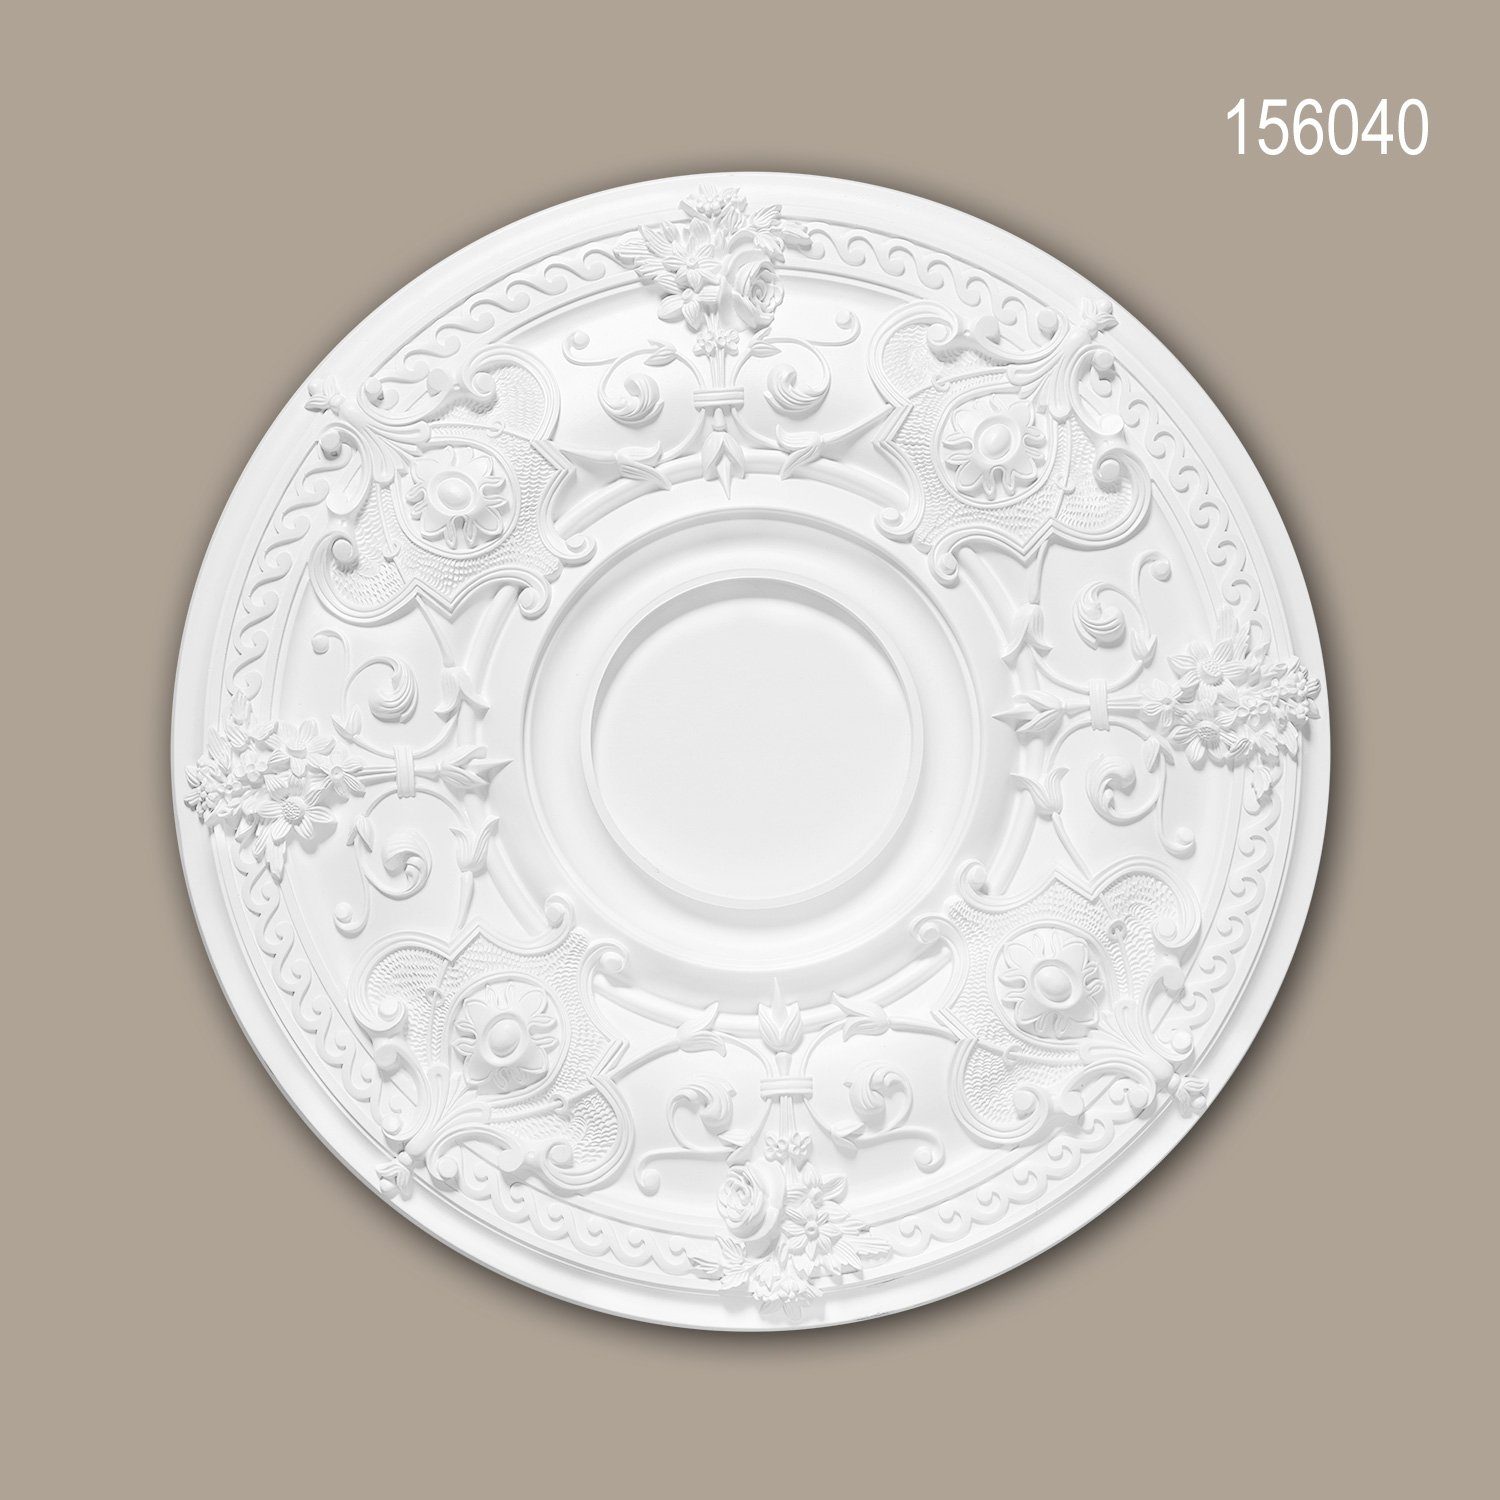 Profhome Decken-Rosette 156040 (Rosette, 1 St., Deckenrosette, Medallion, Stuckrosette, Deckenelement, Zierelement, Durchmesser 70,7 cm), weiß, vorgrundiert, Stil: Neo-Empire